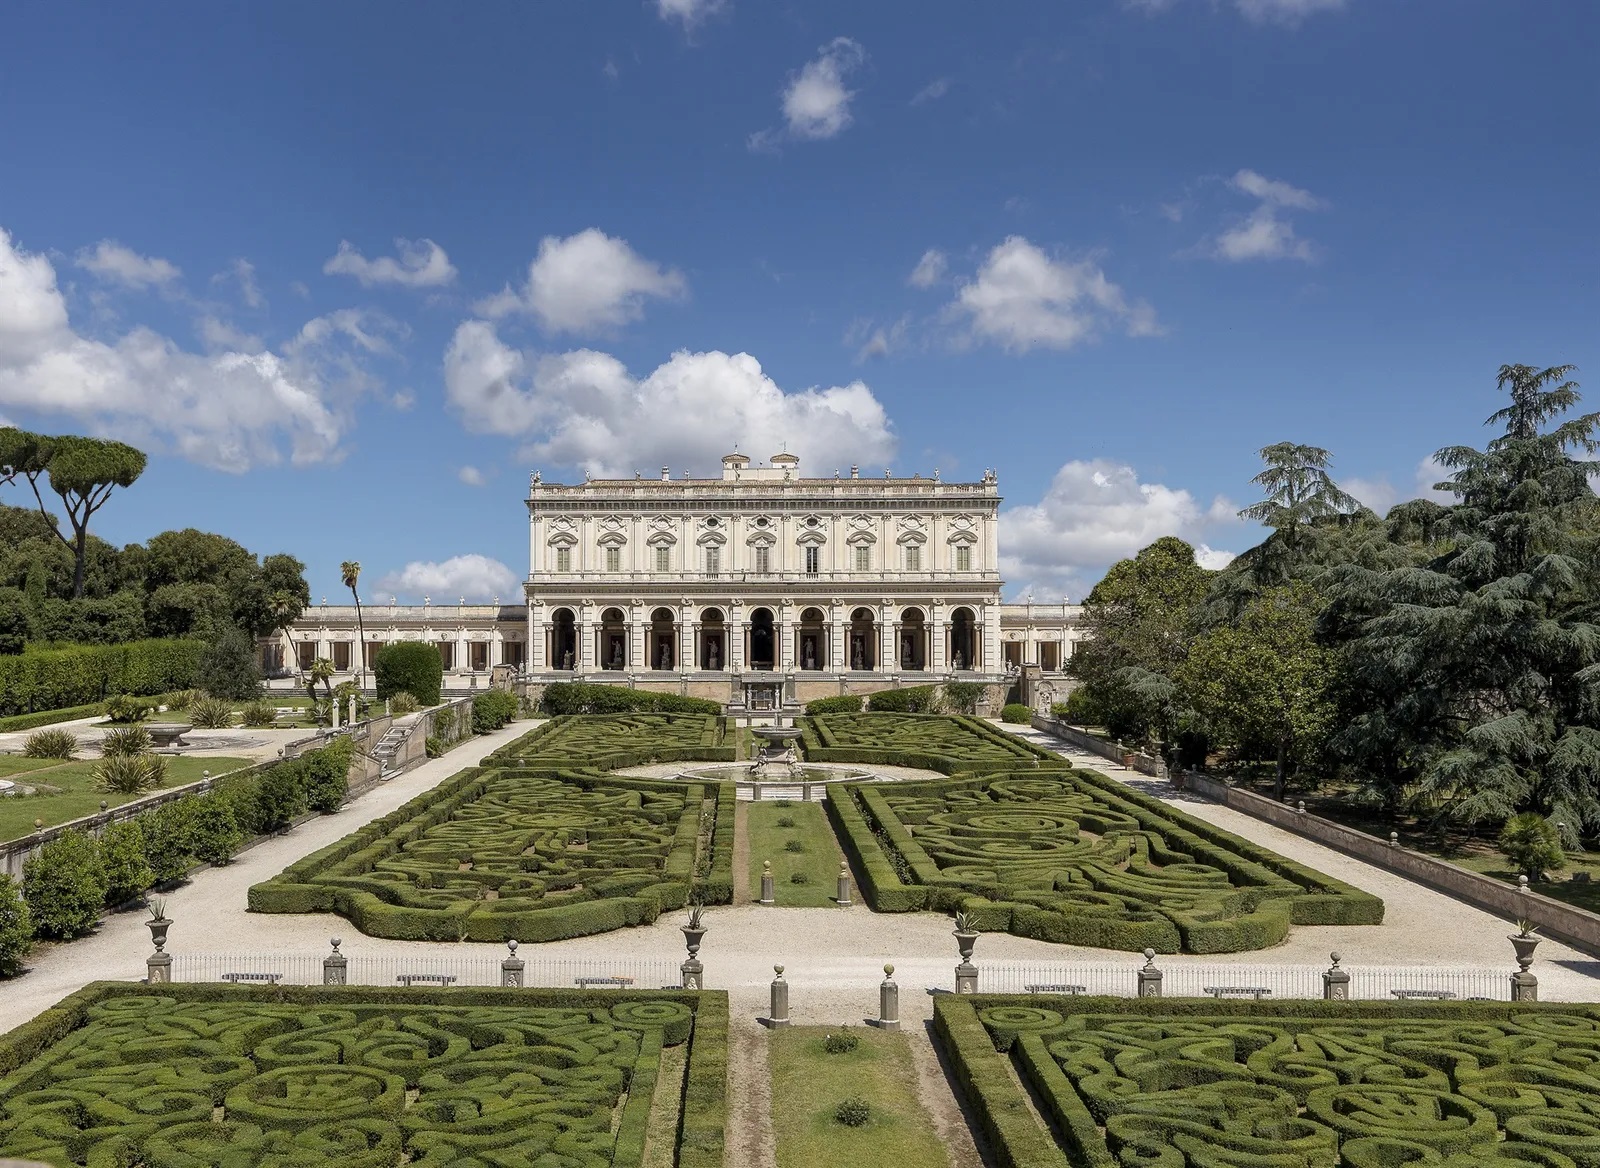 The Torlonia Foundation in Rome opens the antiquarium of Villa Albani to the public 71